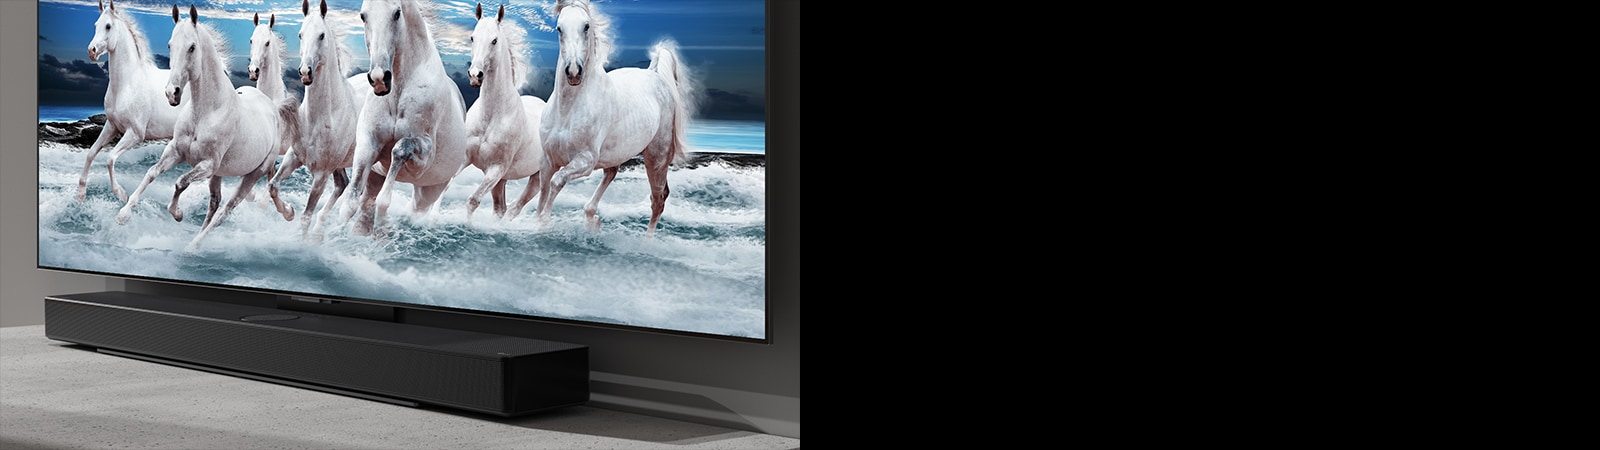 Lydplanken og TV-en er plassert på det hvite bordet og syv hvite hester vises på TV.